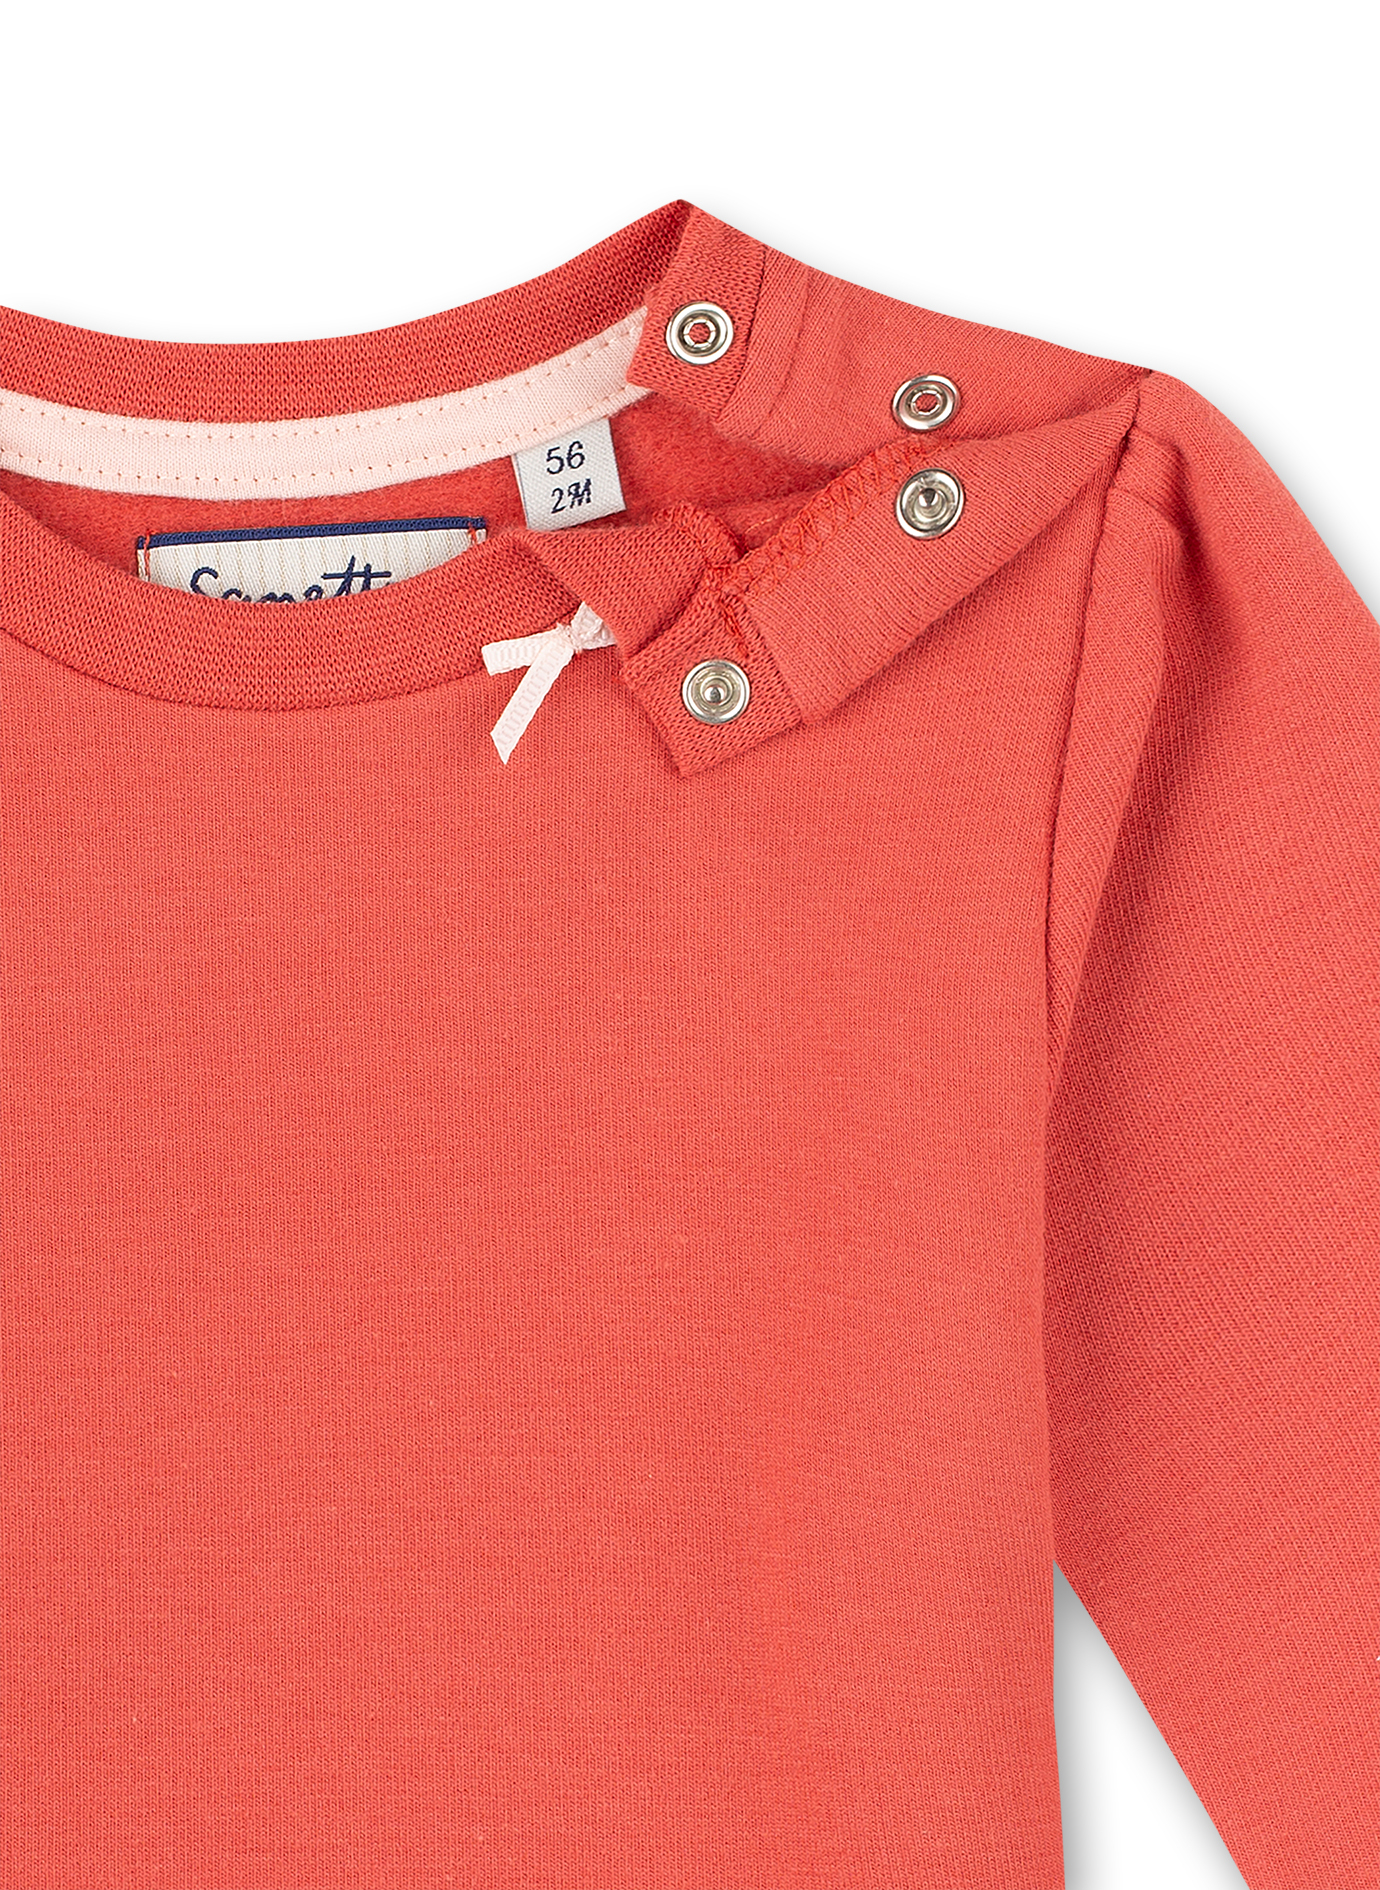 Mädchen-Sweatshirt Rot Family Stork